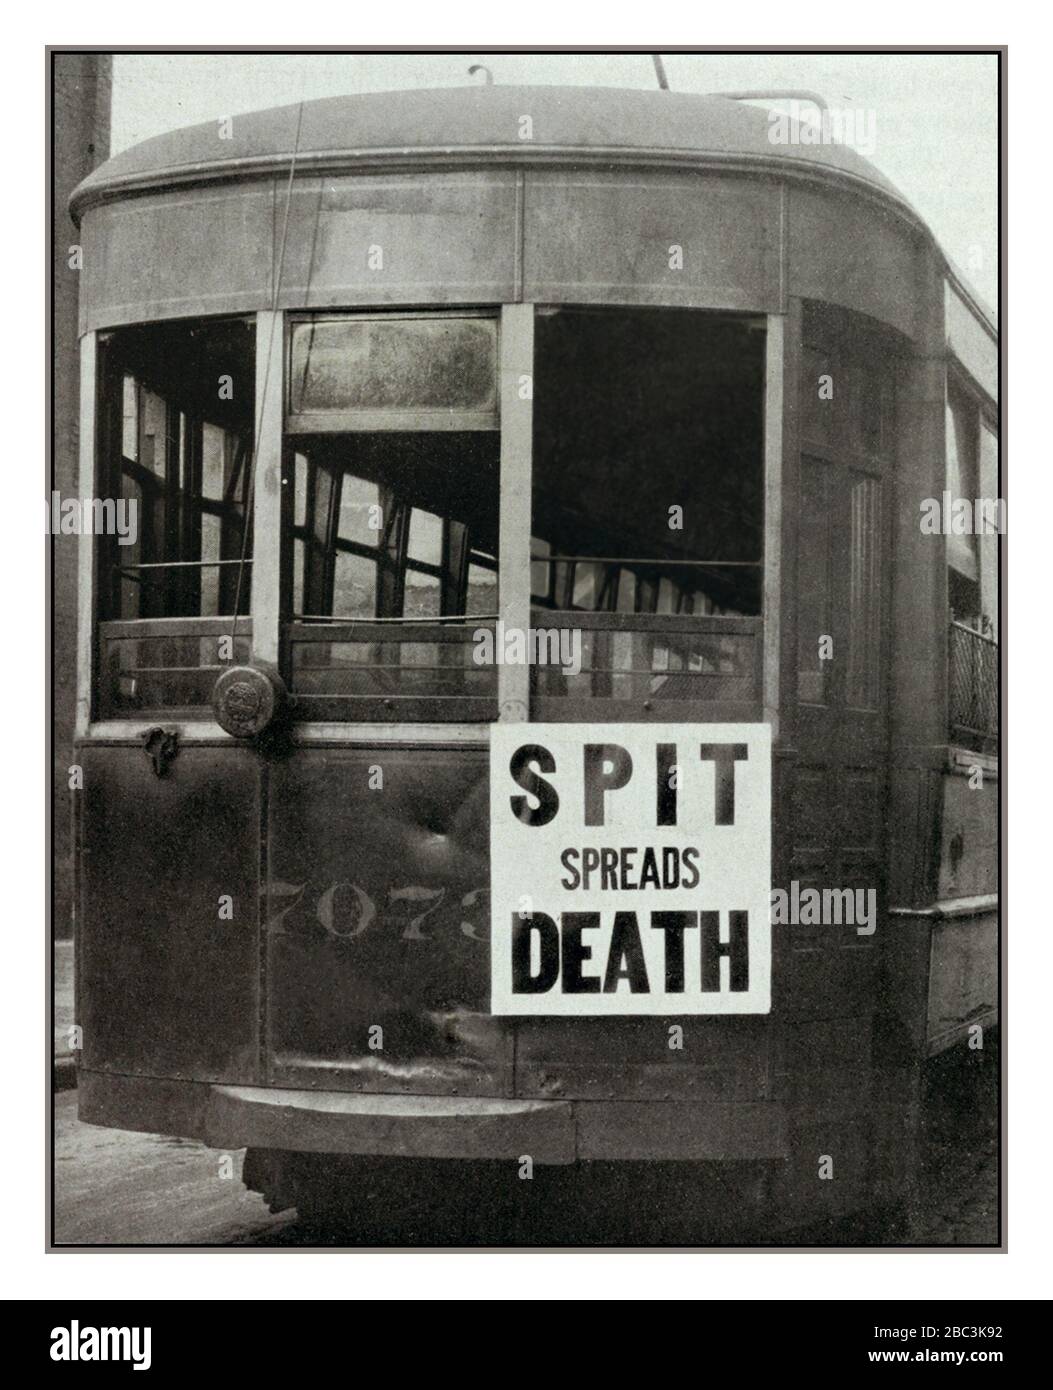 PANDEMIE SPANISCHE GRIPPE Archiv 1900s USA Straßenbahn Philadelphia mit einem Plakat mit der Aufschrift „SPIT SPREADS DEATH“ während der Influenza-Pandemie von 1918-1919, auch bekannt als Spanische Grippe. USA-Konzept für CORONAVIRUS Covid-19 Stockfoto